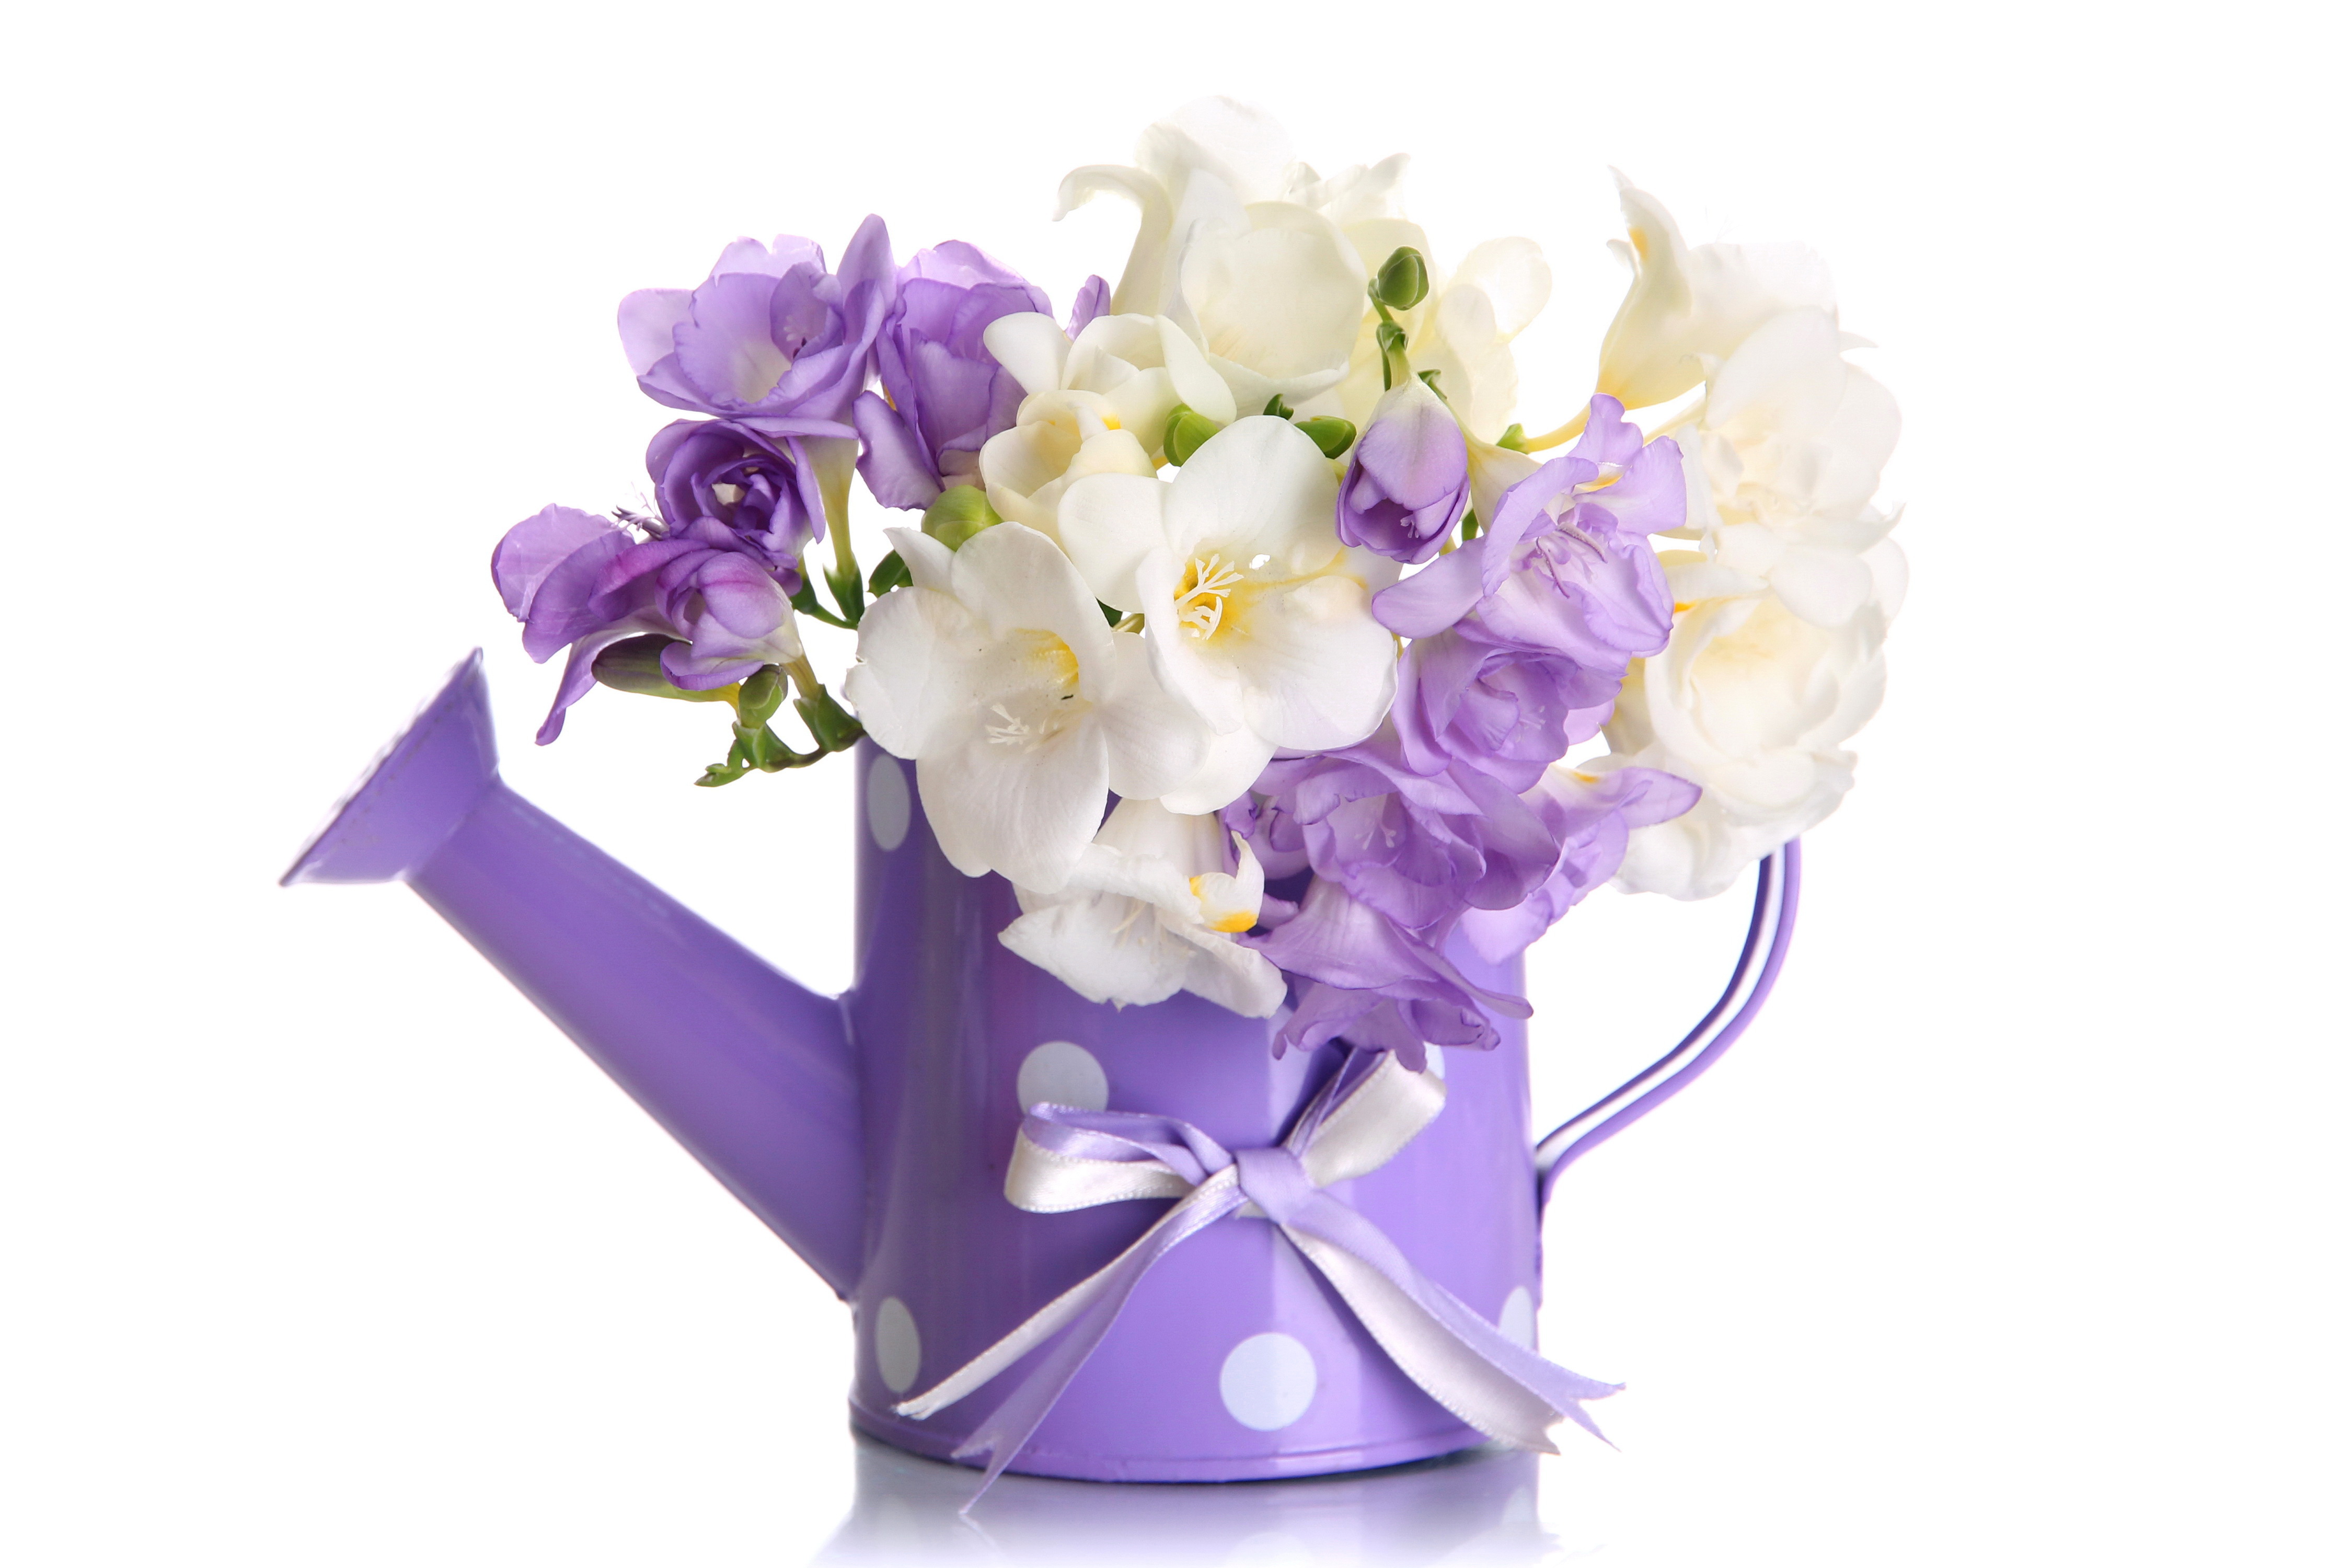 Скачать обои бесплатно Цветок, Фиолетовый, Белый Цветок, Фиолетовый Цветок, Сделано Человеком картинка на рабочий стол ПК